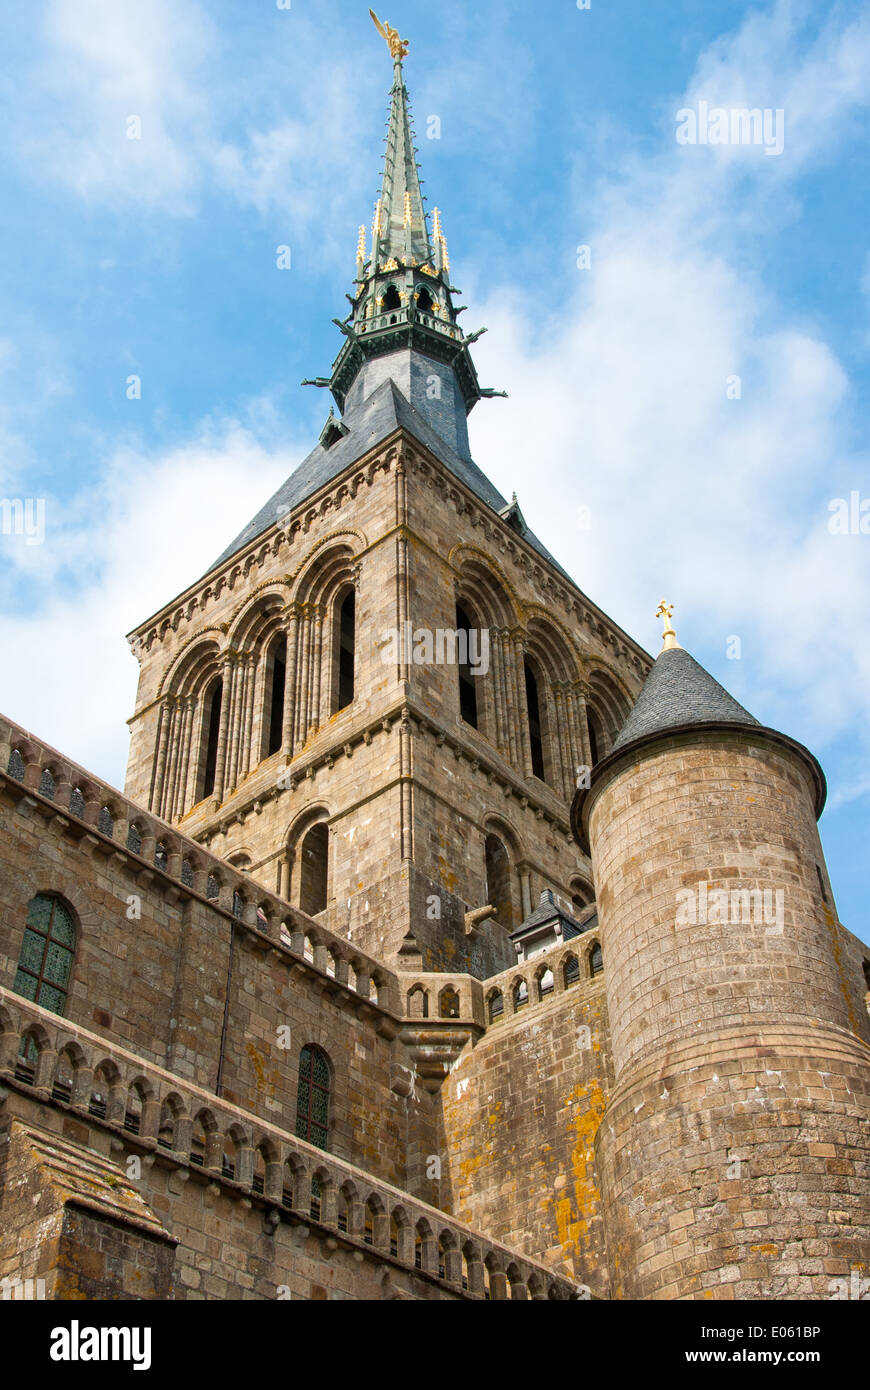 Teilansicht der Abtei Mont Saint Michel mit Turm und Wand Stockfoto